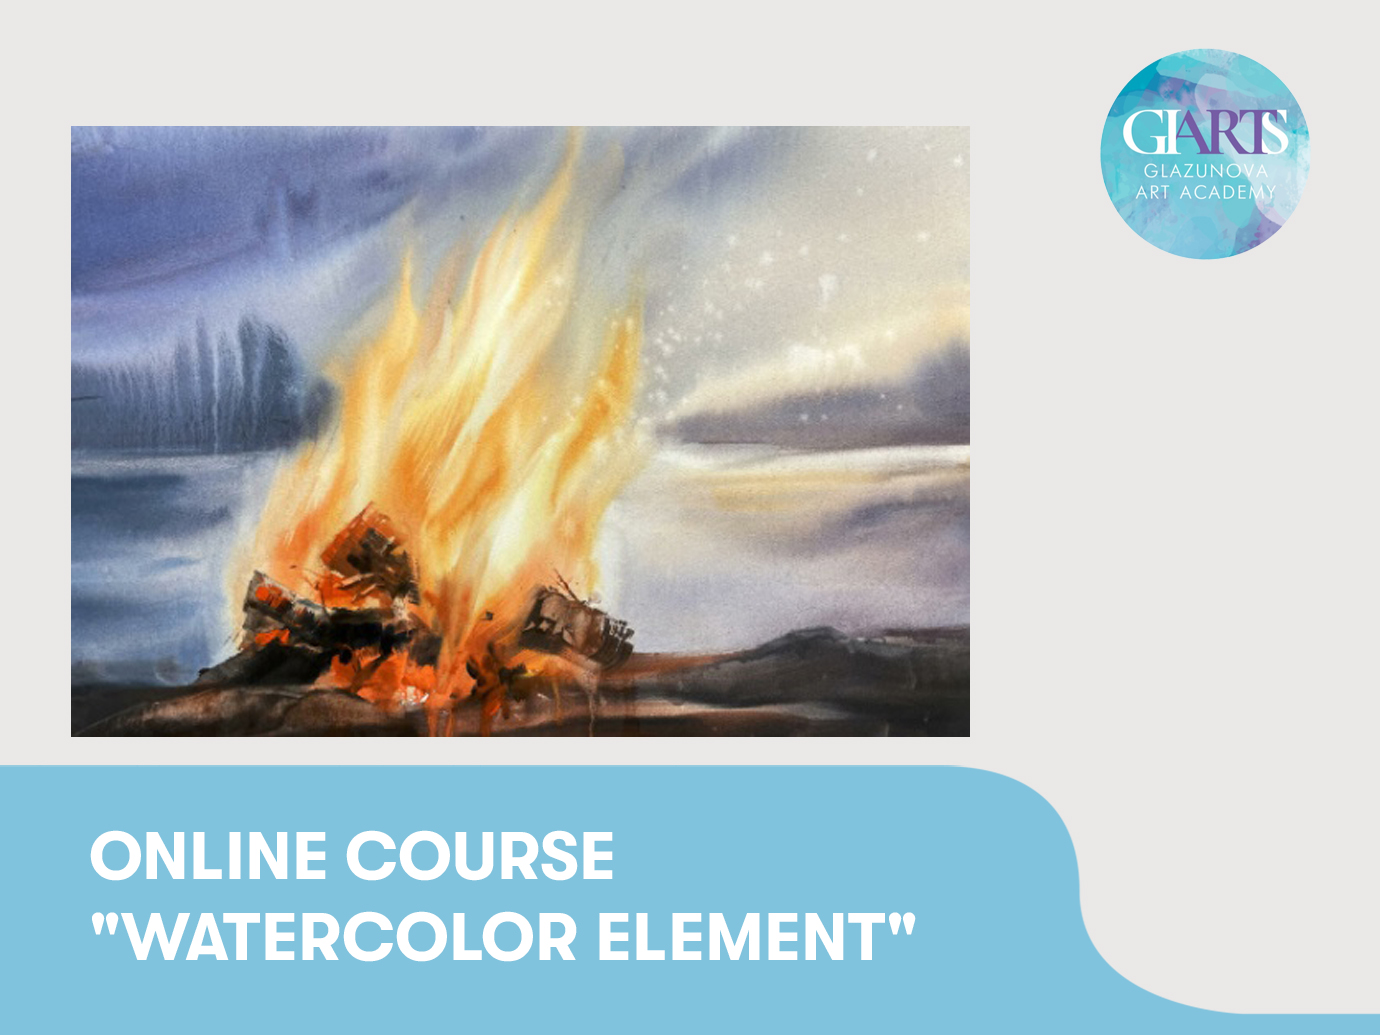 Online course “Watercolor element“